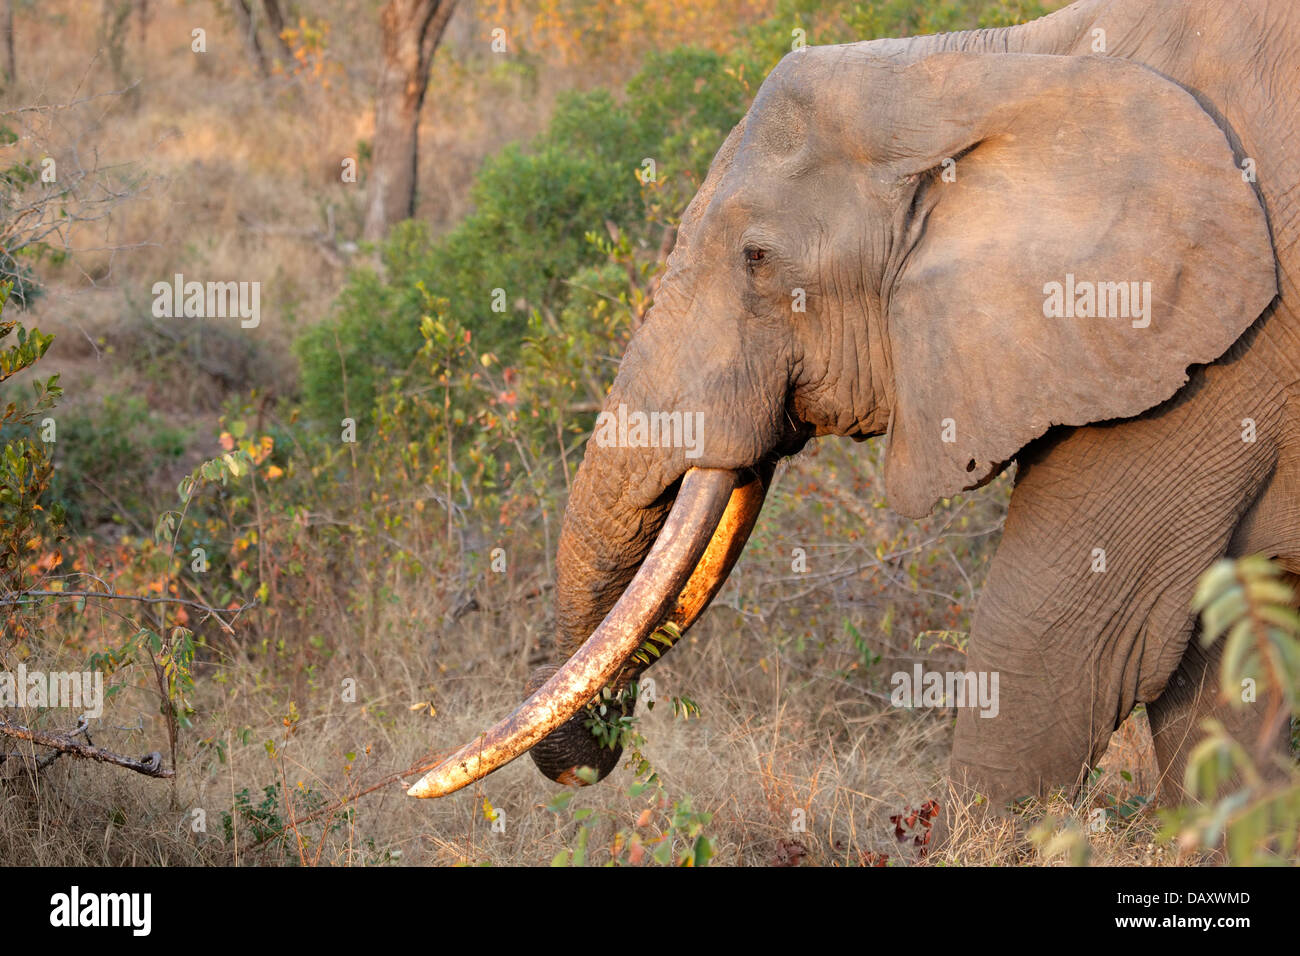 Bull d'Afrique elephant (Loxodonta africana) avec de grandes défenses, Sabie-Sand nature reserve, Afrique du Sud Banque D'Images